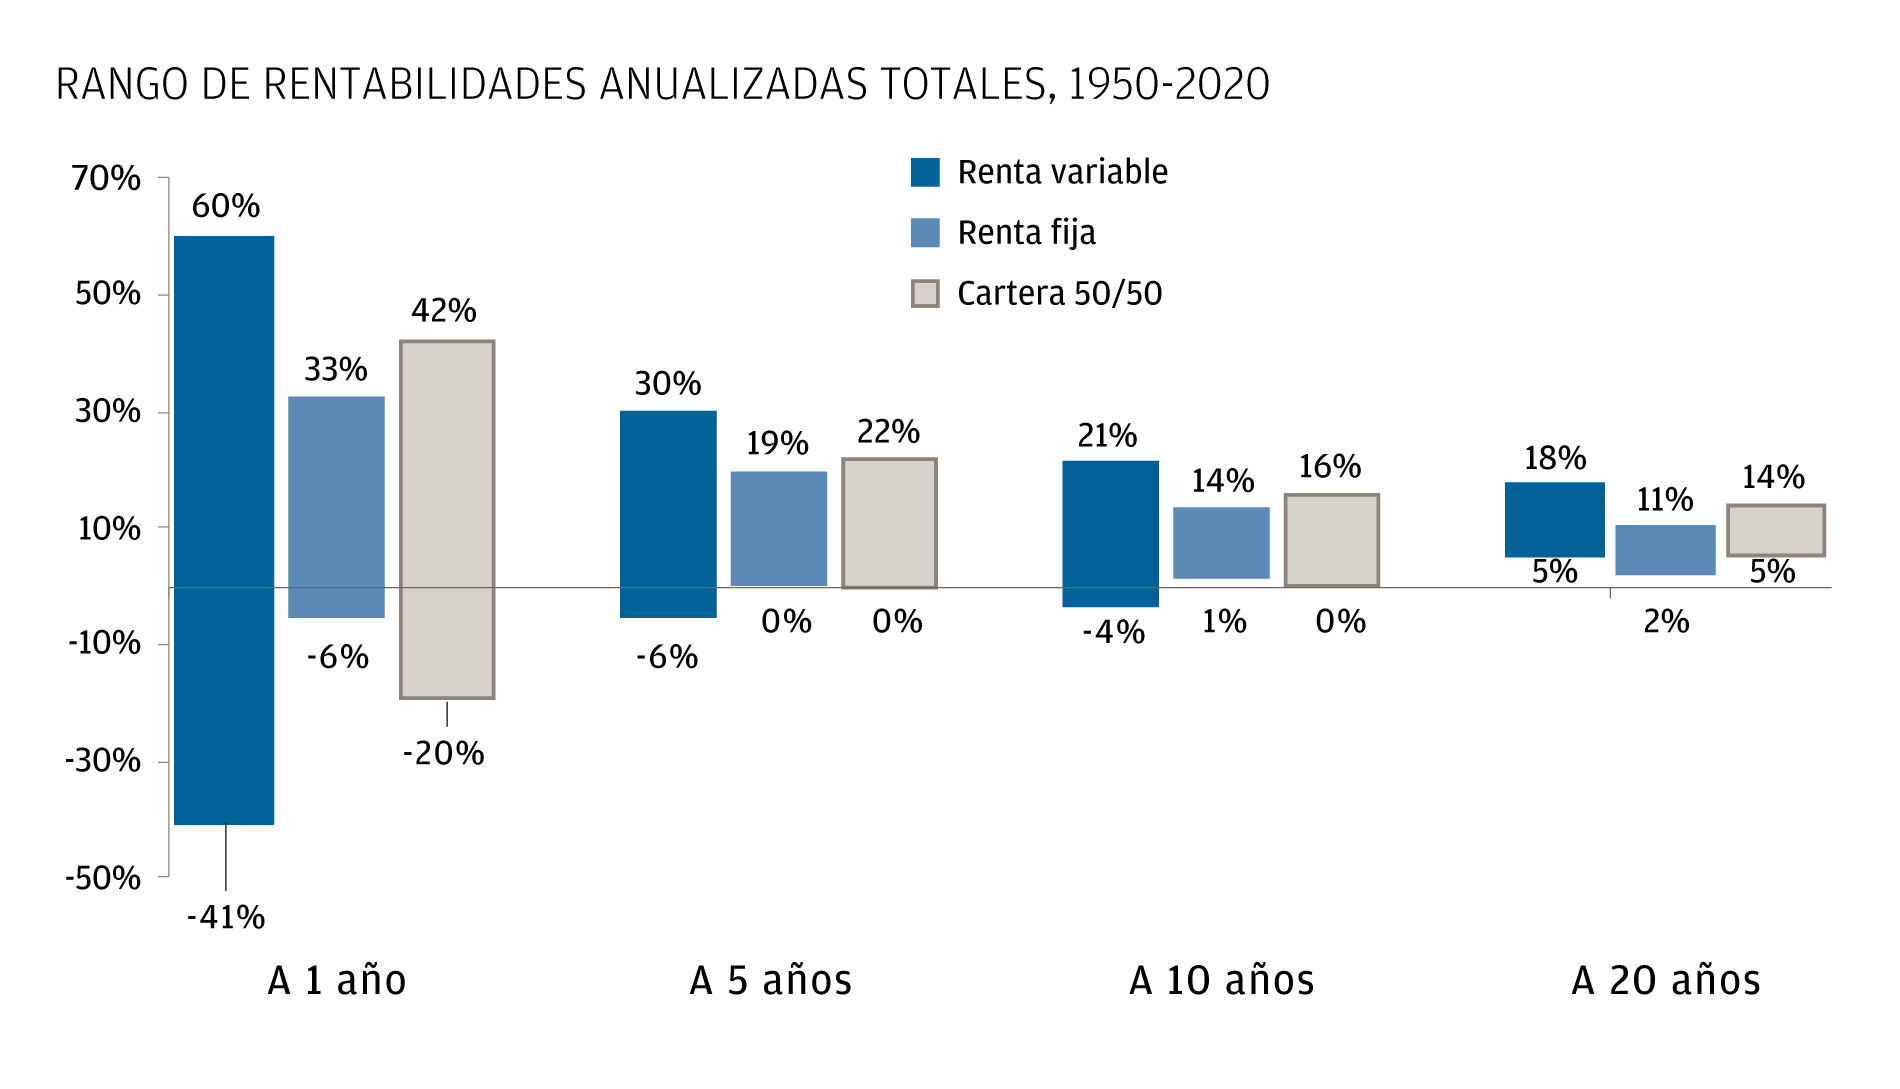 El gráfico de barras muestra el rango de rentabilidades totales anualizadas de renta variable, renta fija y una mezcla de 50/50 entre 1950 y 2020. Las barras muestran las rentabilidades a uno, cinco, 10 y 20 años. A lo largo de un periodo de 20 años, el rango de rentabilidad total media anualizada de la renta variable fue del 5% al 18%; el rango de la rentabilidad total media anualizada de la renta fija fue del 2% al 11%; y el rango de rentabilidad total media anualizada de una mezcla 50/50 de renta fija y renta variable se situó entre el 5% al 14% 